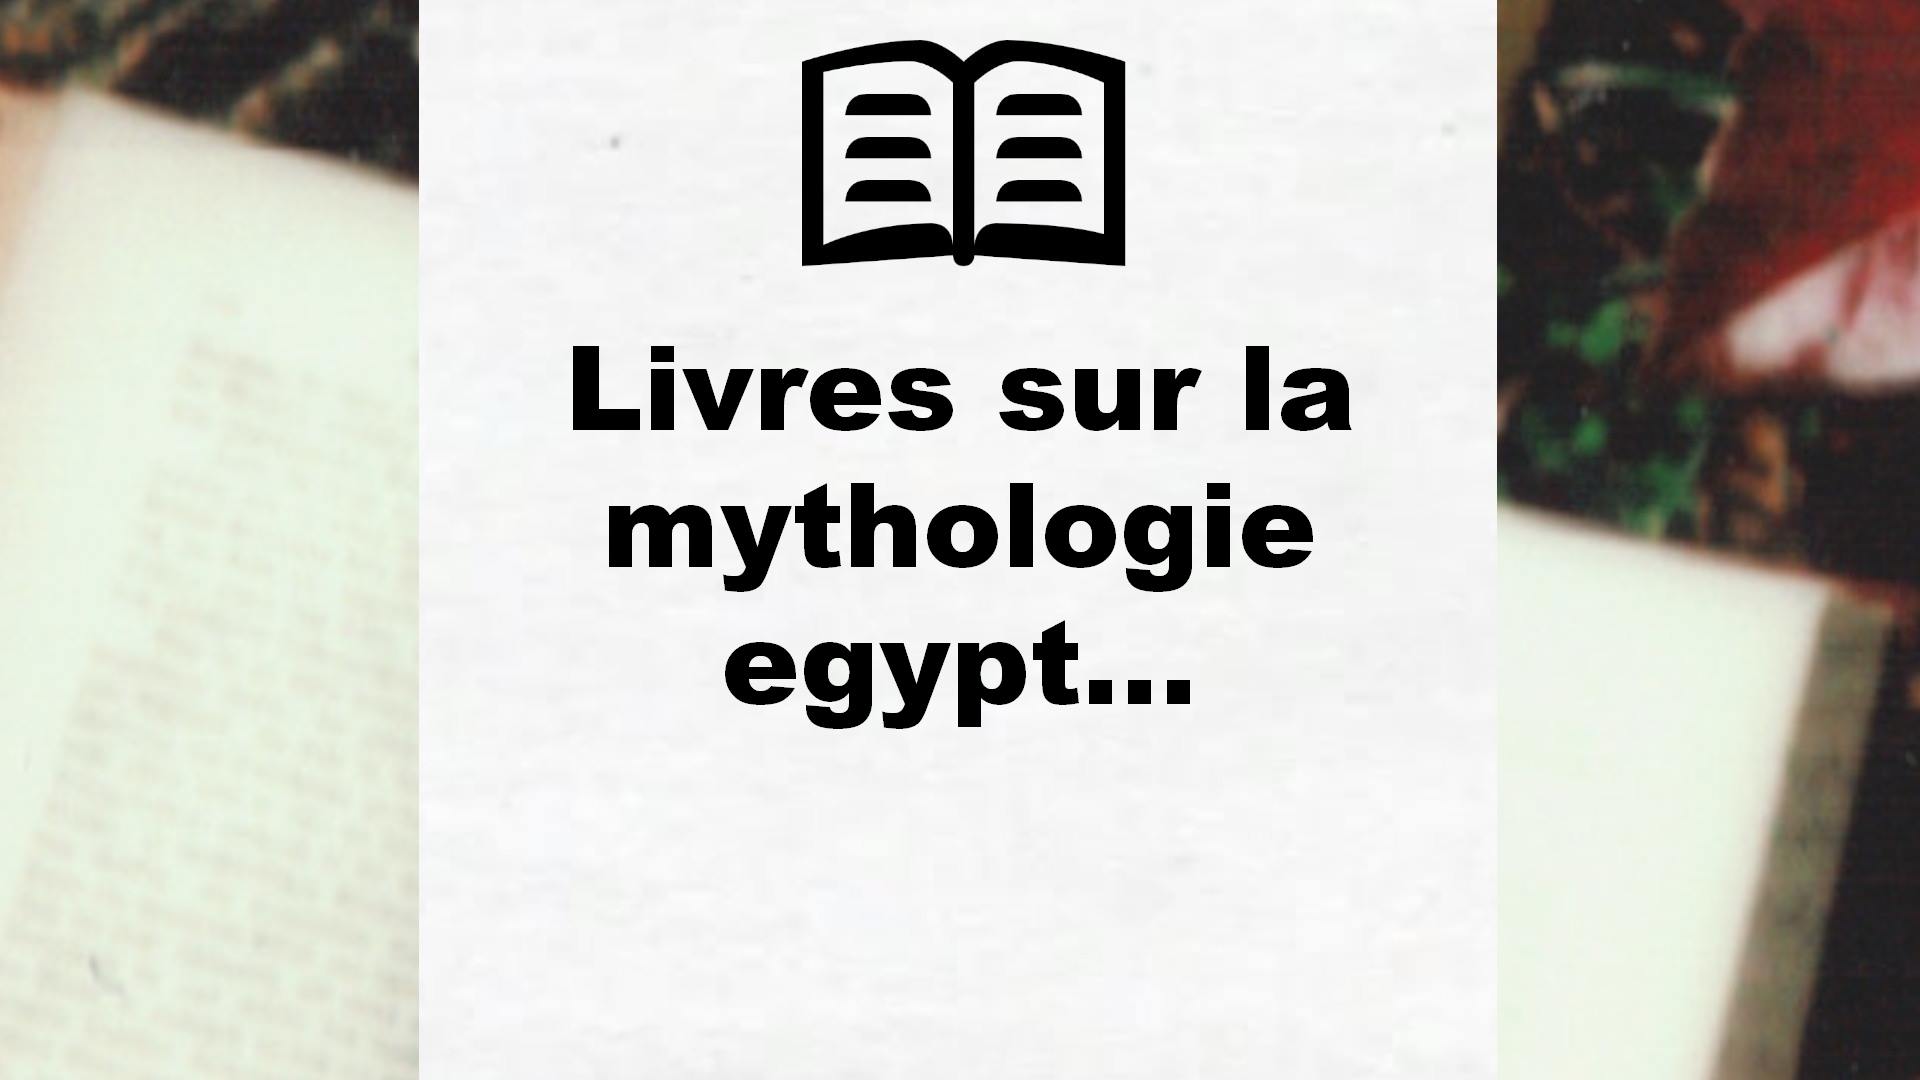 Livres sur la mythologie egyptienne